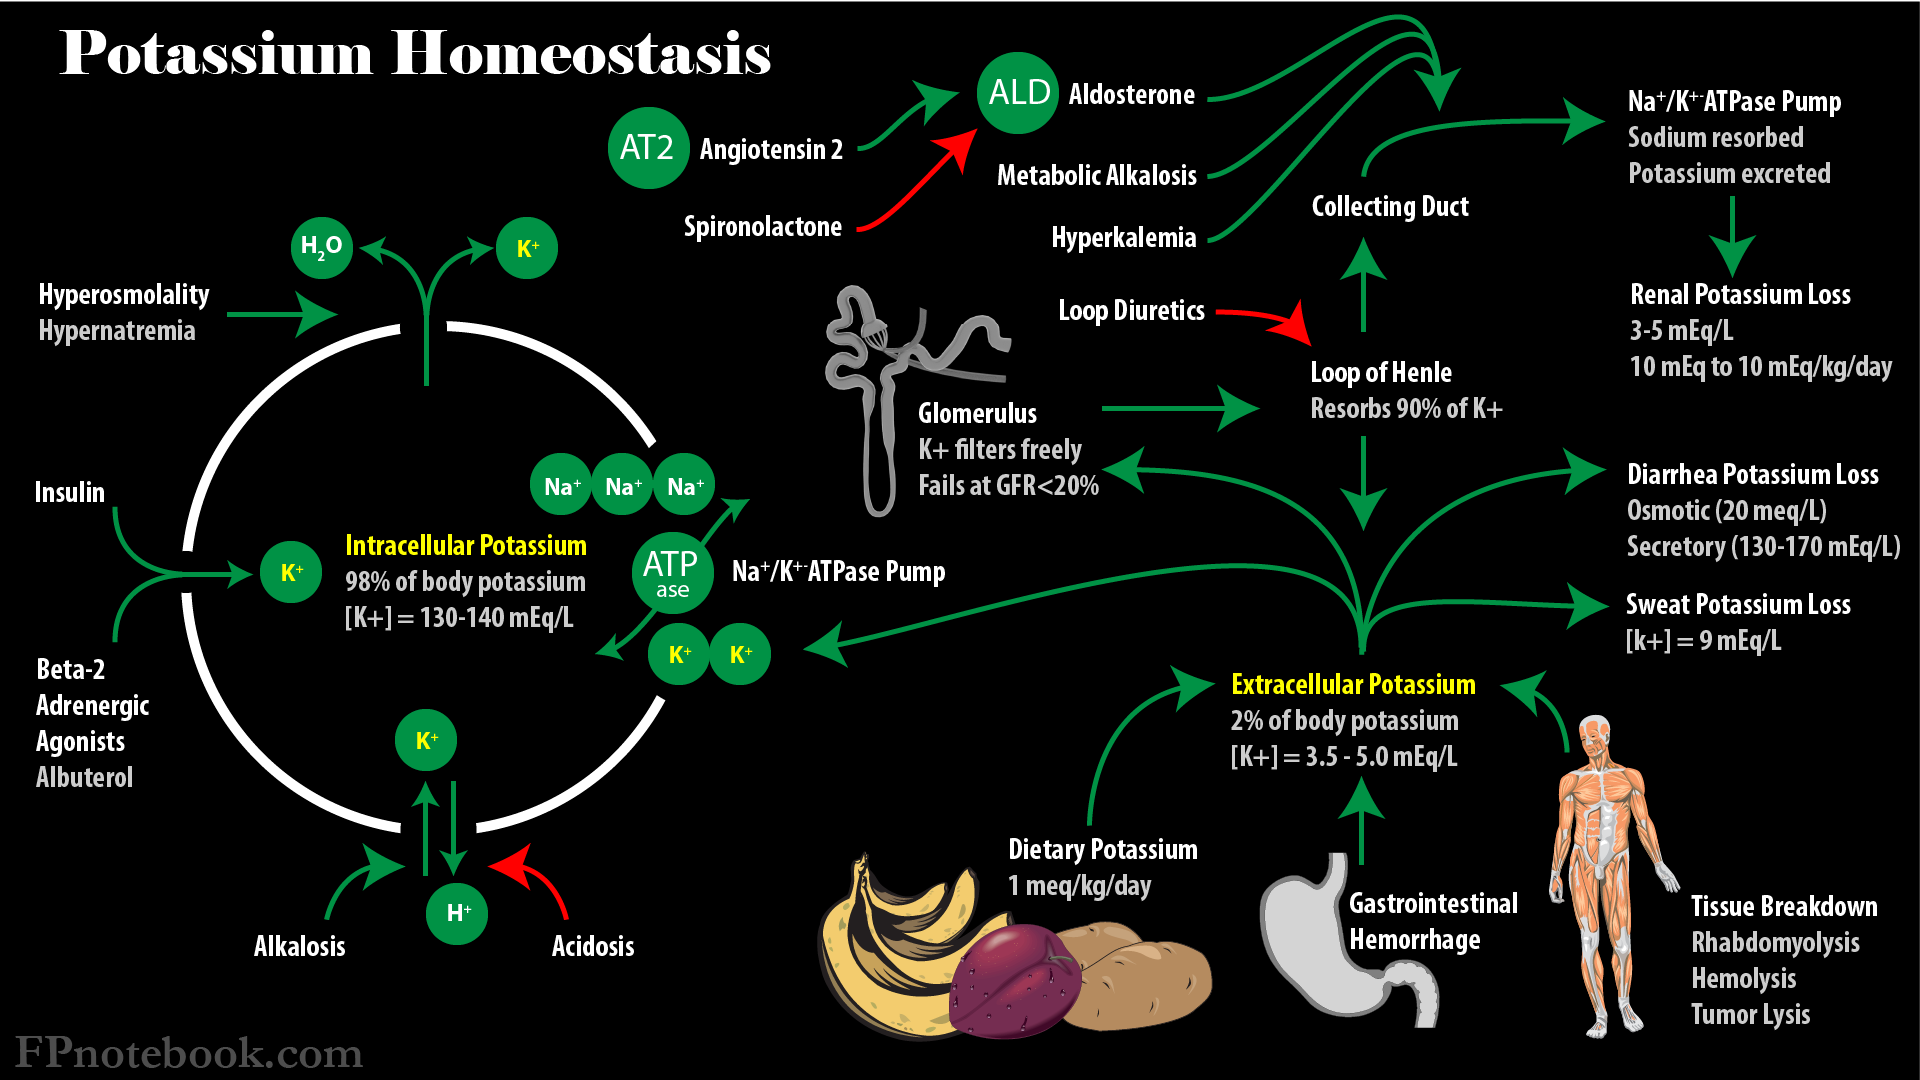 Potassium and metabolism